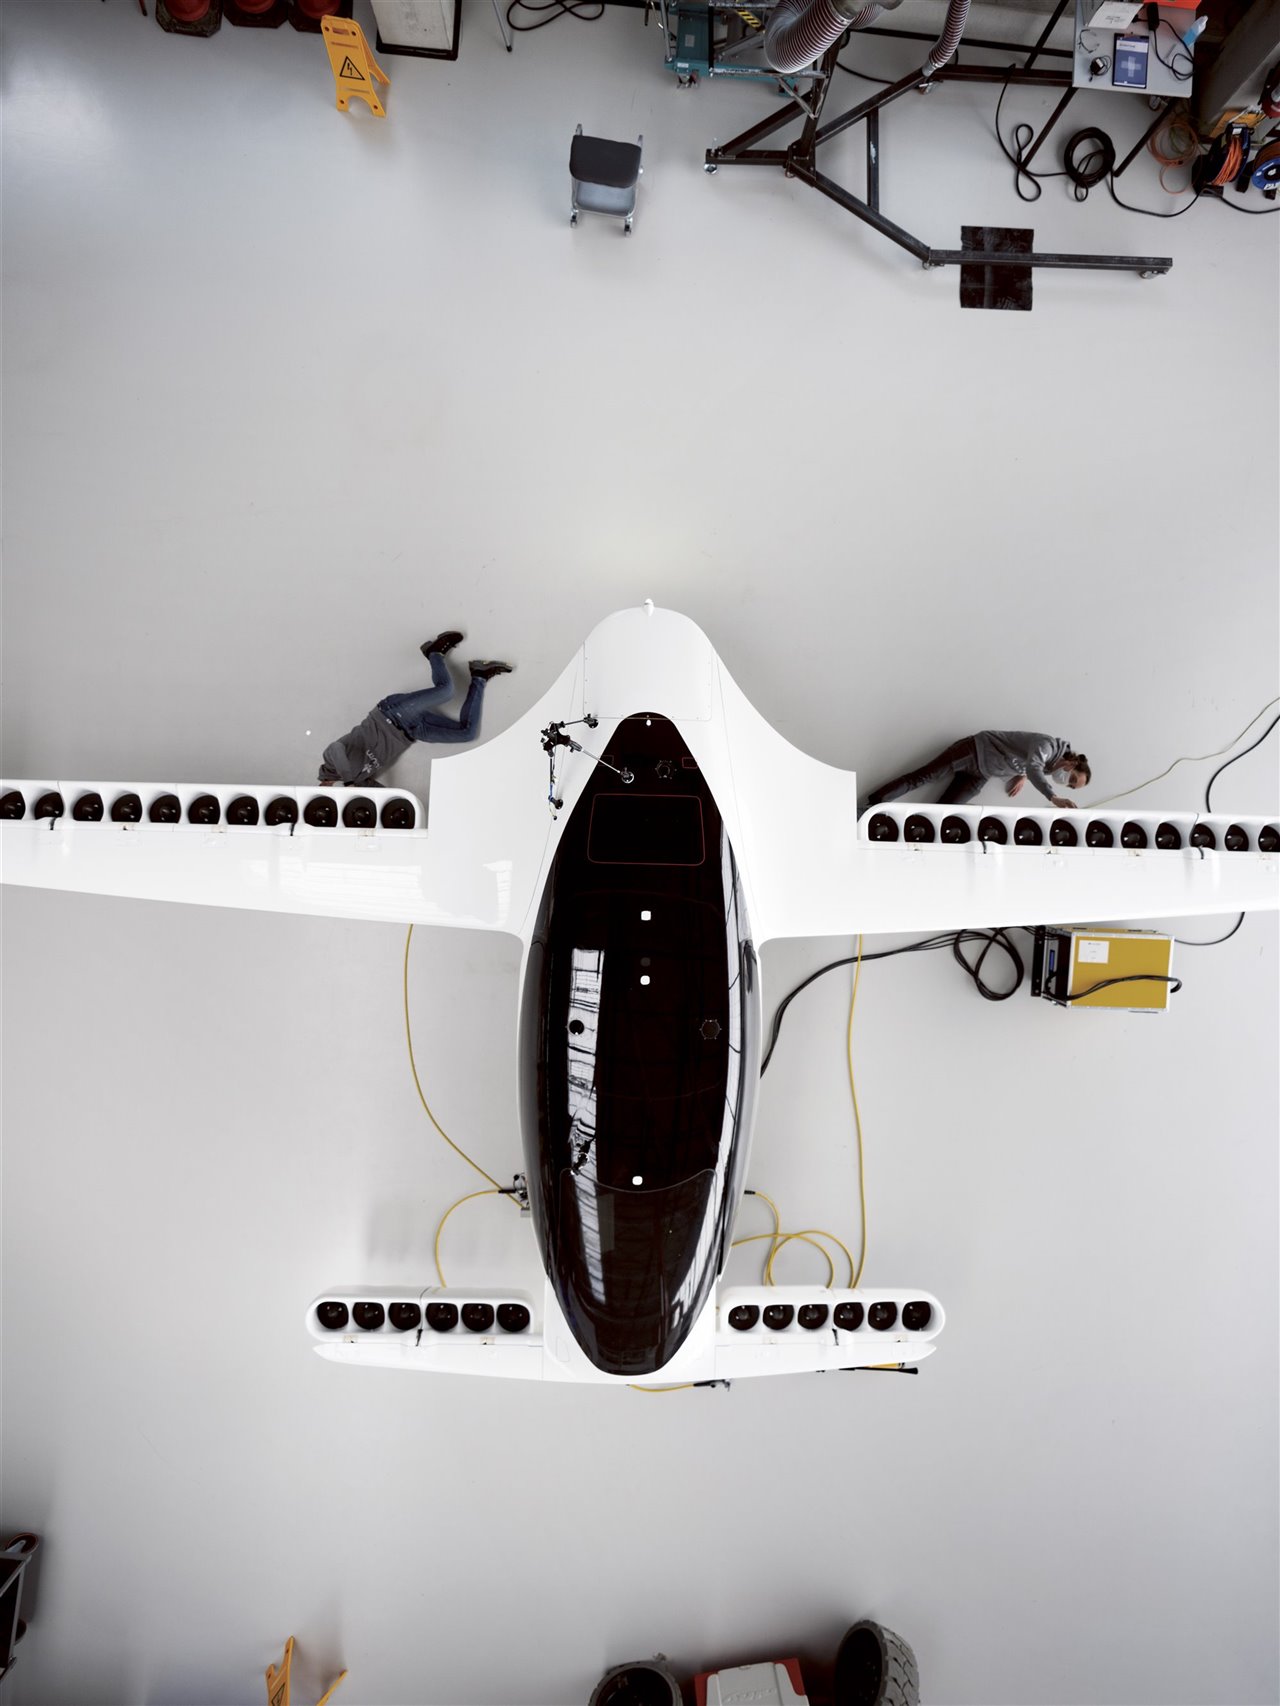 Unos ingenieros trabajan en un prototipo de aerotaxi de cinco plazas en Múnich. Construido por la empresa aeroespacial alemana Lilium, este modelo demostró en su primer vuelo, en 2019, que la potencia de un motor eléctrico puede propulsar el despegue y aterrizaje vertical, así como el vuelo horizontal.